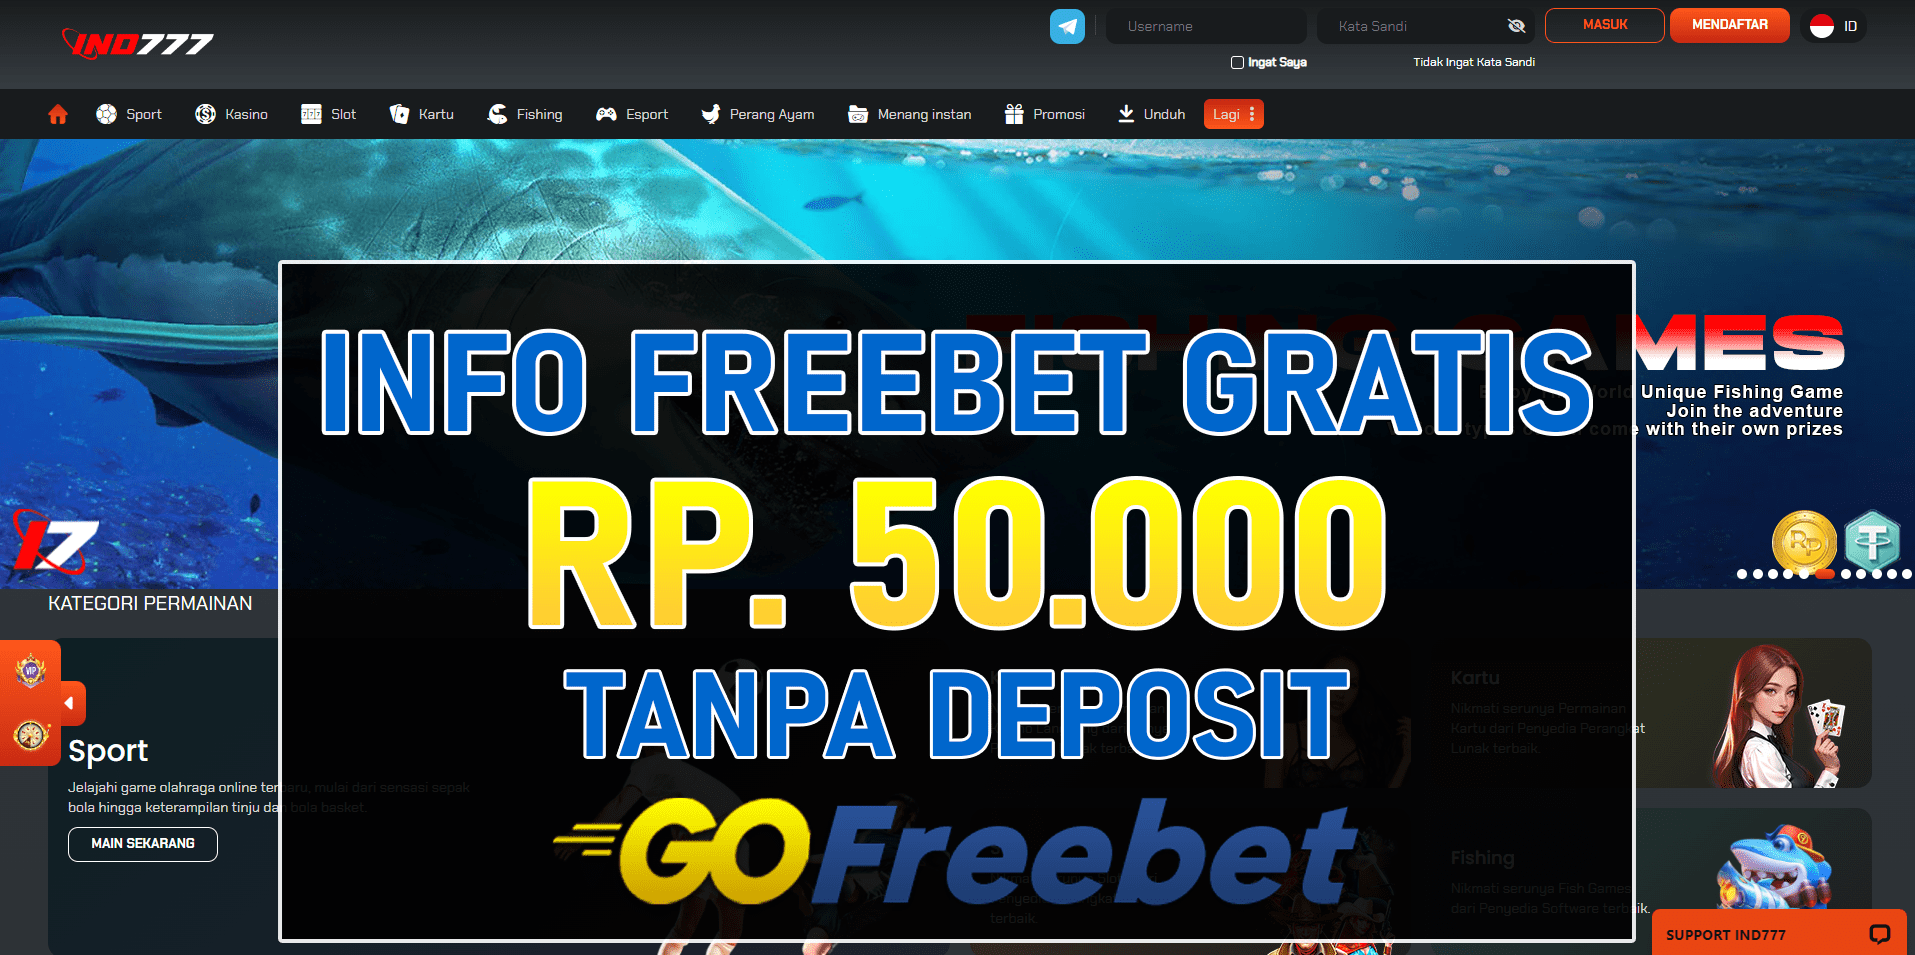 Ind777 Freebet Gratis Rp 50.000 Tanpa Deposit